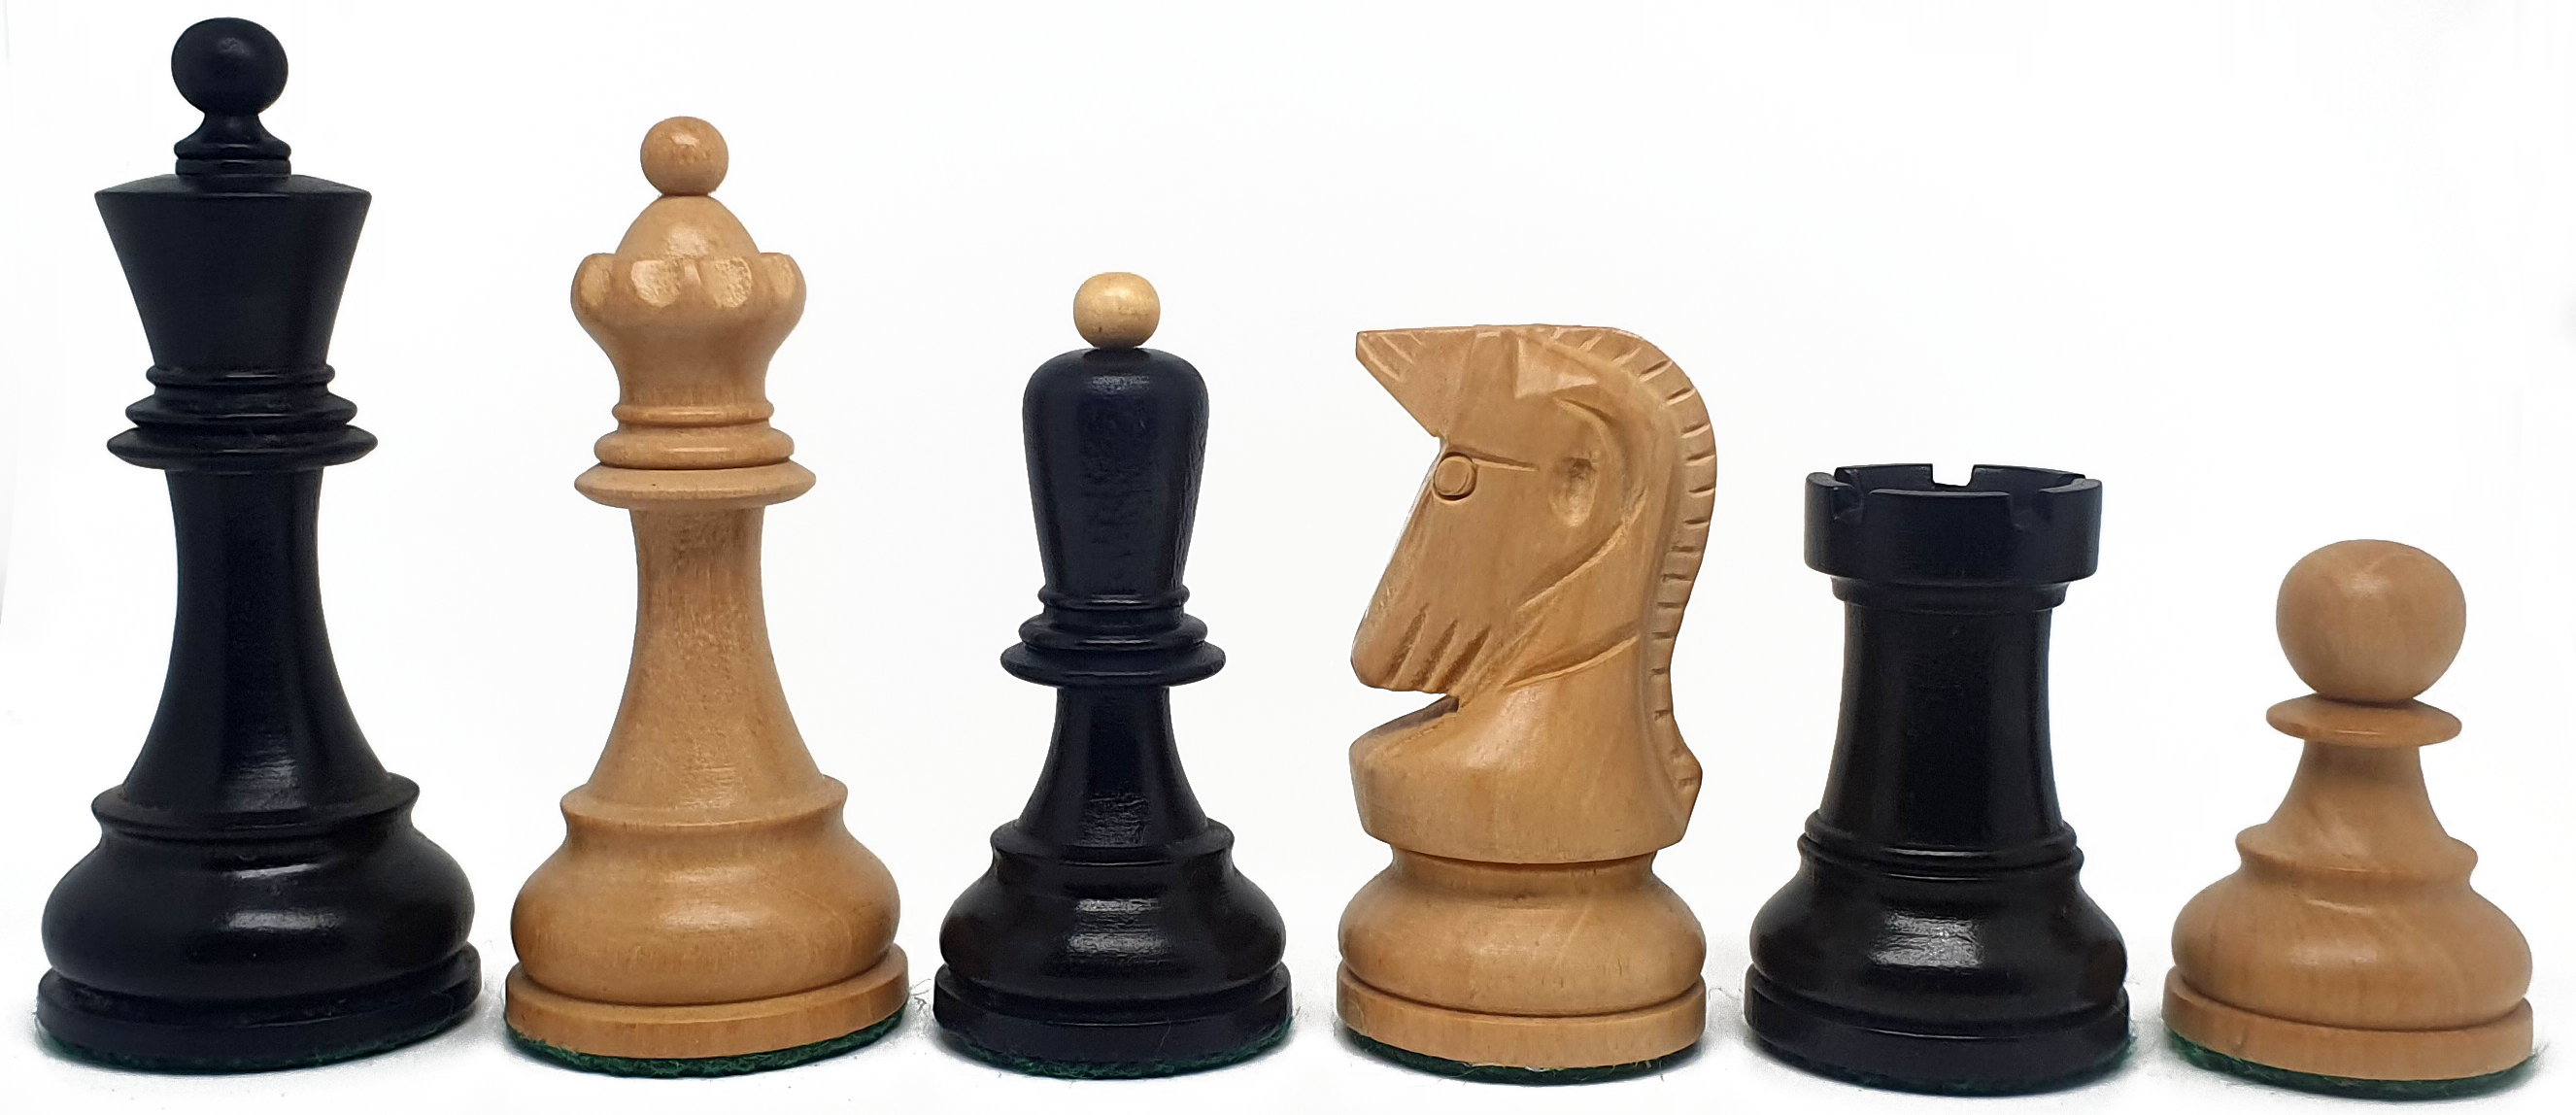 VI/ Piezas de ajedrez modelo Dubrovnik "3.50" Ebanizado. 5578